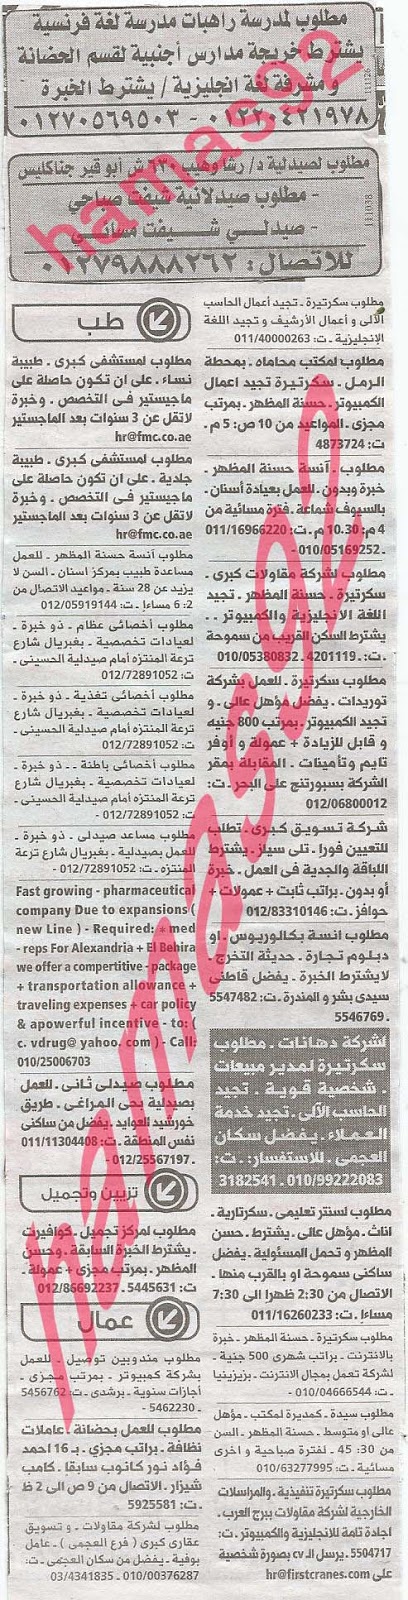 وظائف خالية فى جريدة الوسيط الاسكندرية الجمعة 06-09-2013 %D9%88+%D8%B3+%D8%B3+8